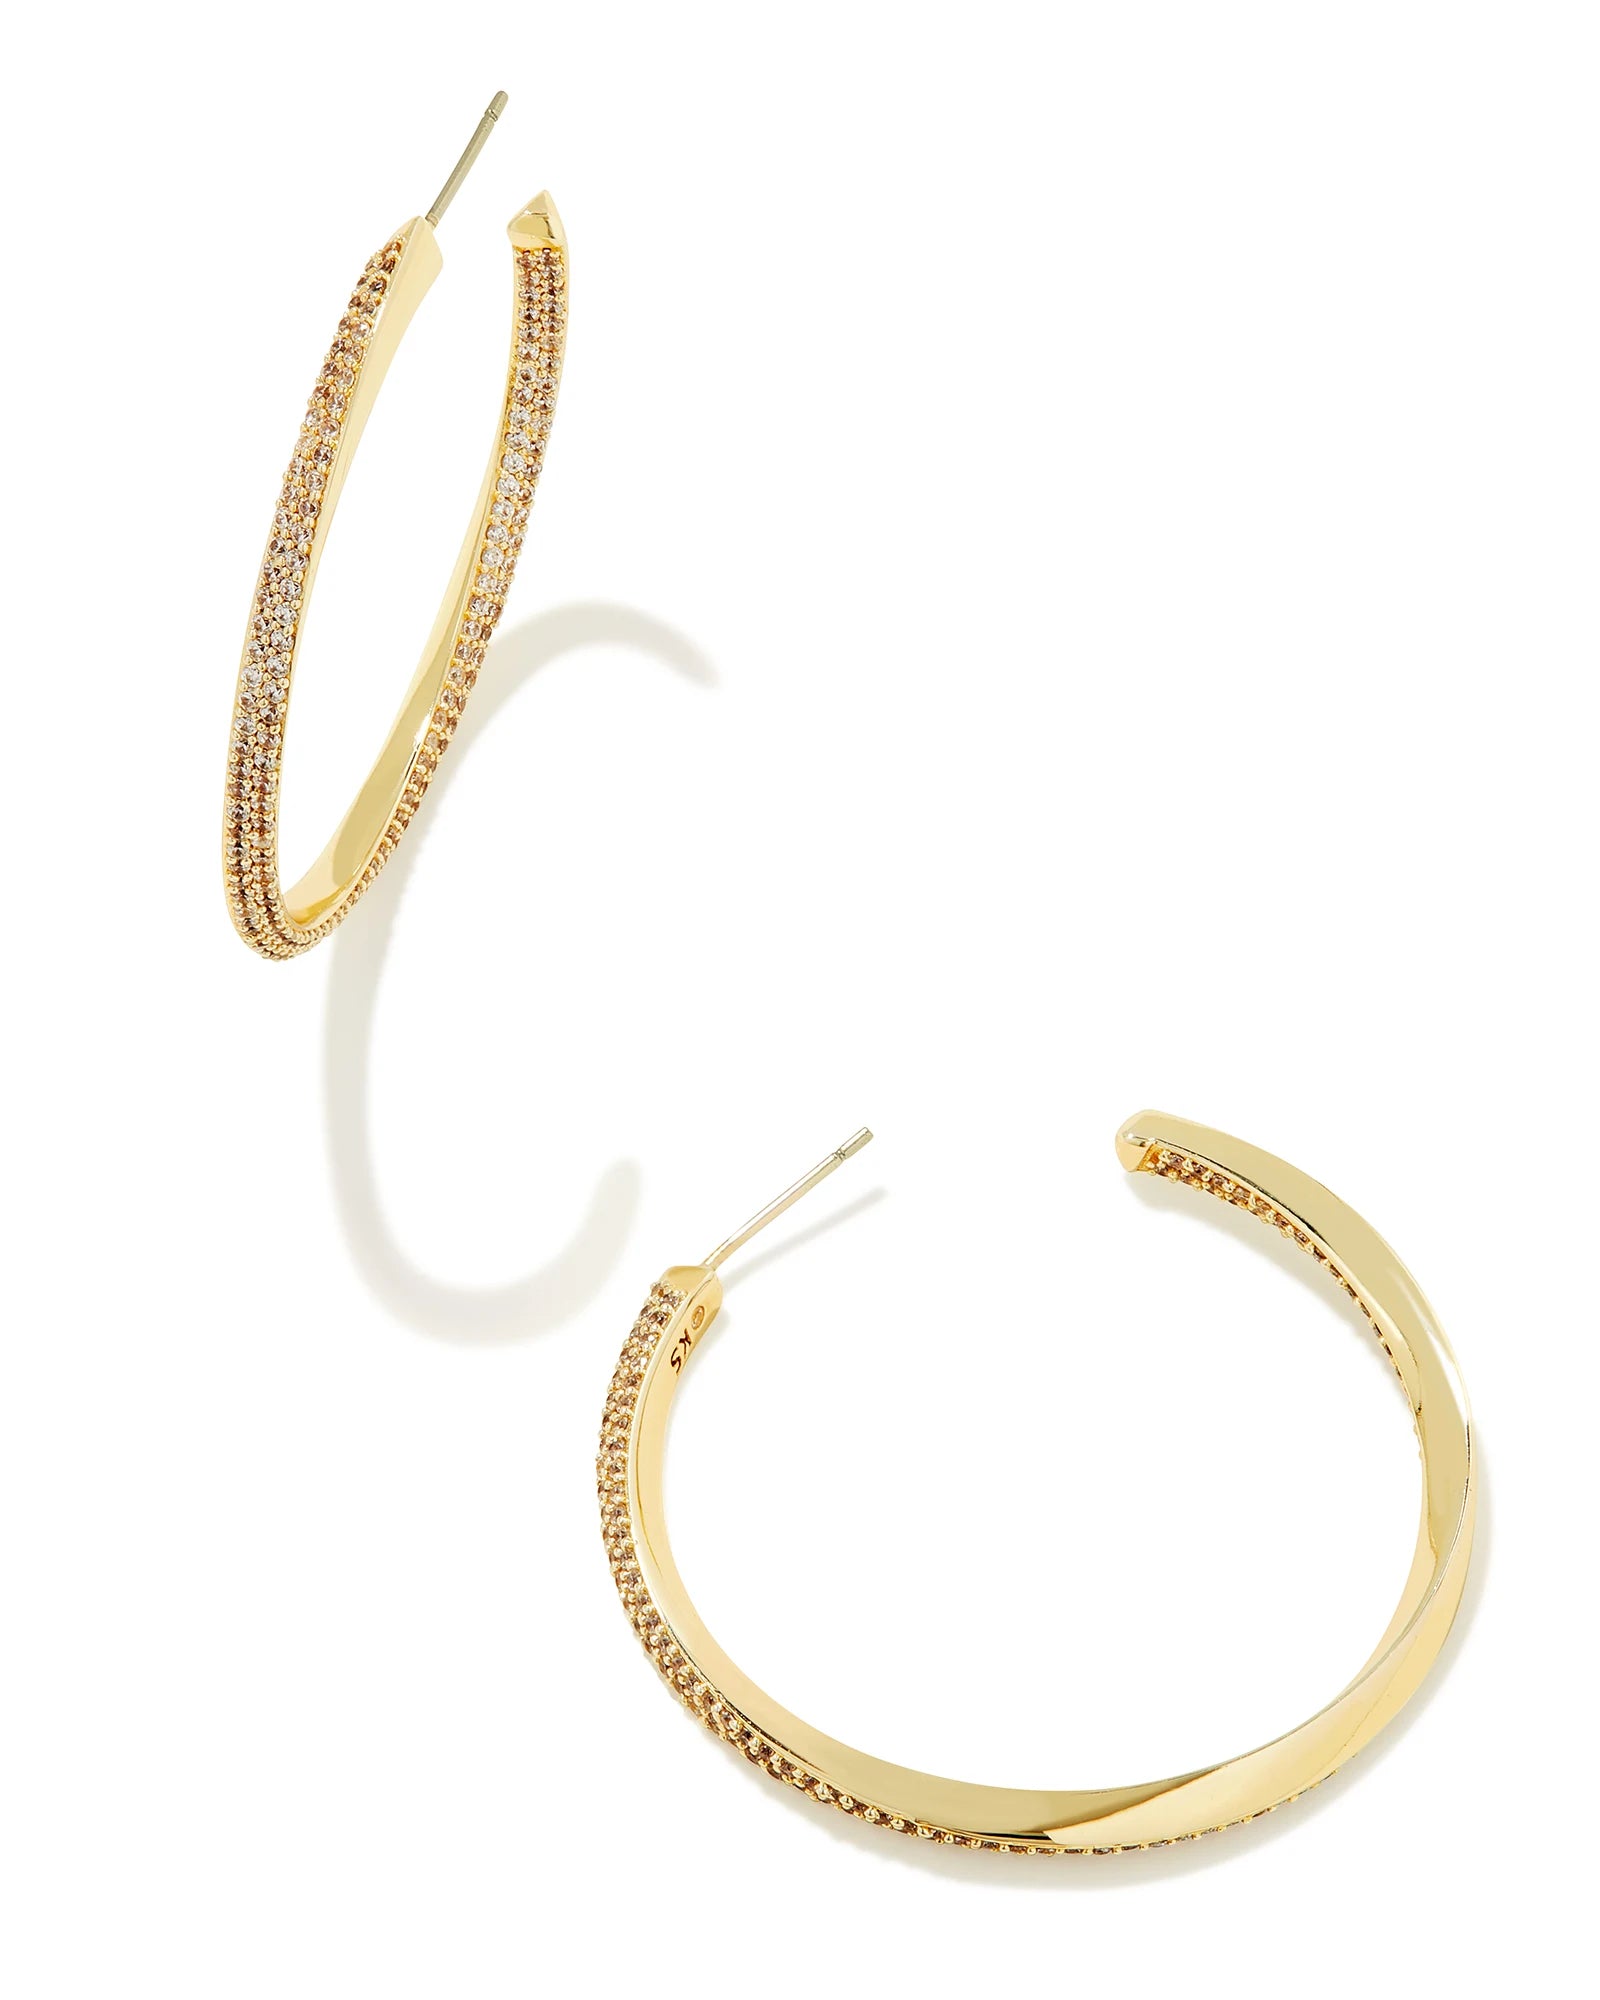 Kendra Scott Ella Hoop Earrings Gold White CZ-Earrings-Kendra Scott-E00251GLD-The Twisted Chandelier